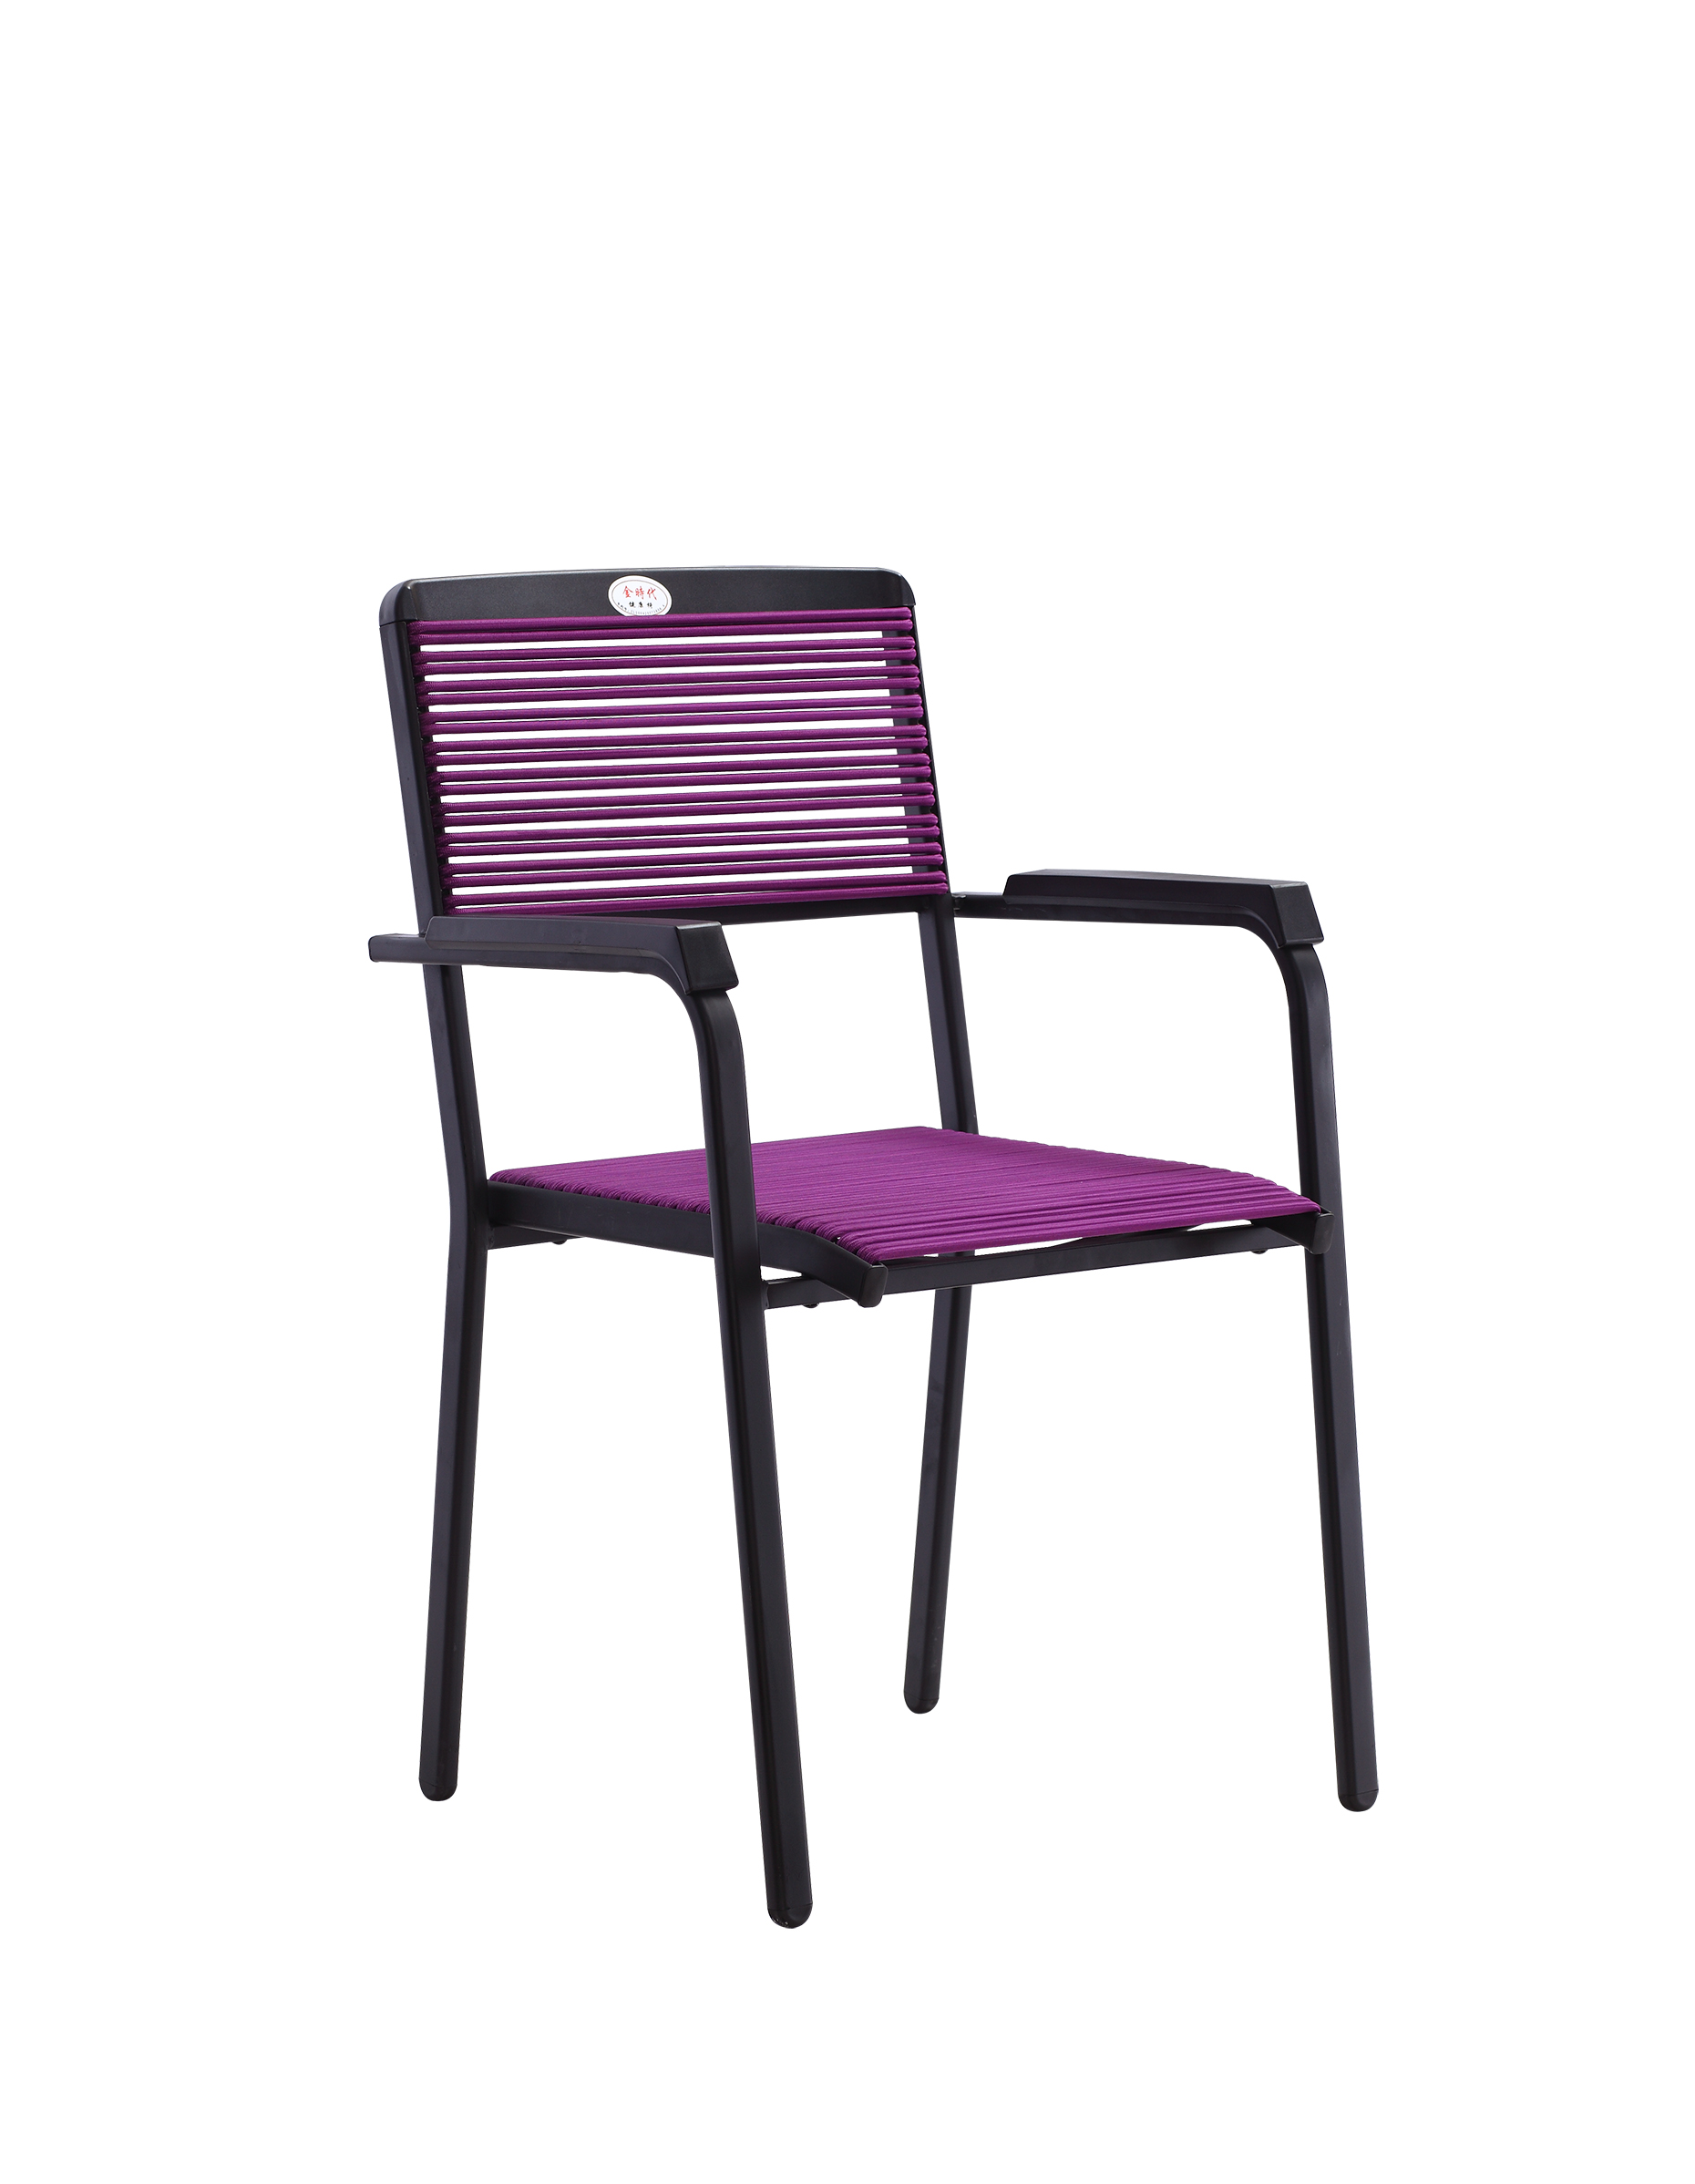 厂家直销YG7036-5餐厅椅 曲线靠背橡胶坐垫透气散热 办公职员椅休闲椅